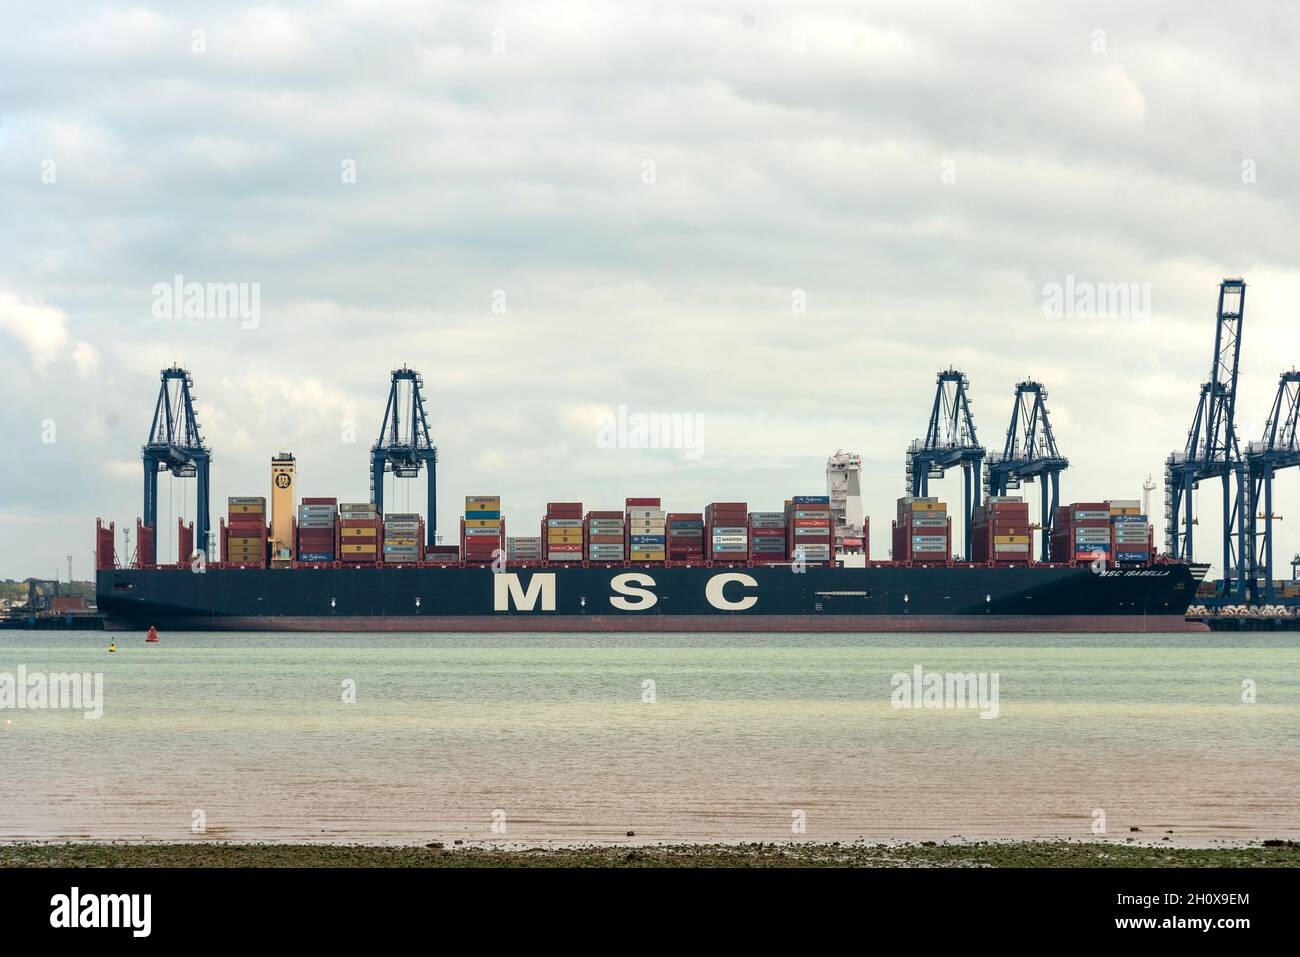 14/10/2021. Felixstowe, Großbritannien. Ein MSC-Frachtraum ist am Hafen von Felixstowe angedockt, der aufgrund des Mangels an LKW-Fahrern Schiffe aus Asien abweisen musste, weil ein Rückstand an Containern aufgrund des Mangels an LKW-Fahrern nicht verteilt wurde. AP Moller-Maresk, das weltweit größte Containerunternehmen, musste Container auf kleinere Schiffe nach Großbritannien verladen. Dies wirkt sich störend aus, da die Schifffahrt in die Vorweihnachtszeit mit einem möglichen Mangel an Weihnachtsartikeln in Großbritannien eintritt. Stockfoto